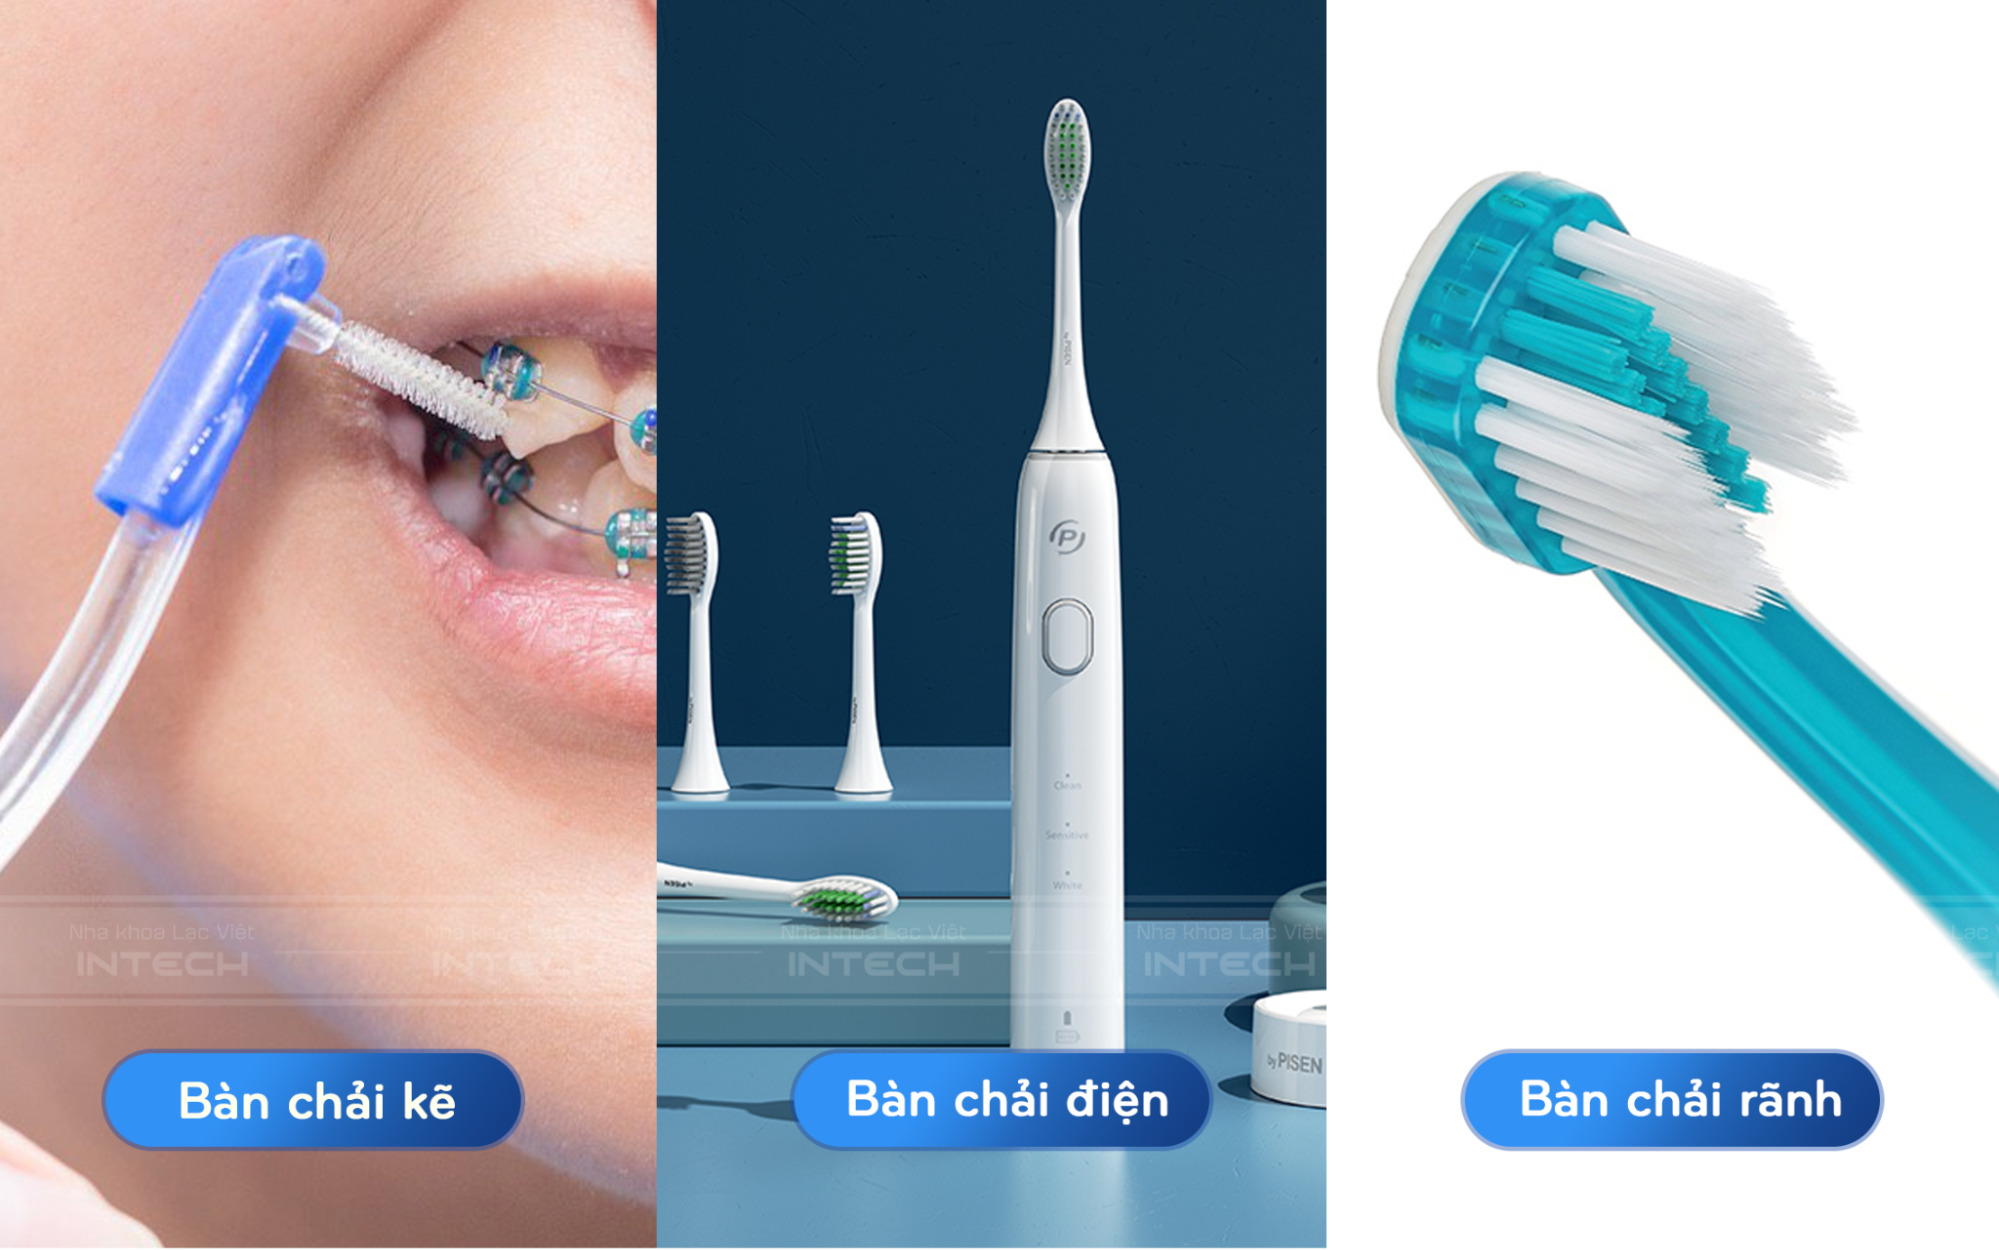 Để vệ sinh răng miệng khi niềng răng, bạn nên sử dụng các loại bàn chải chuyên dụng